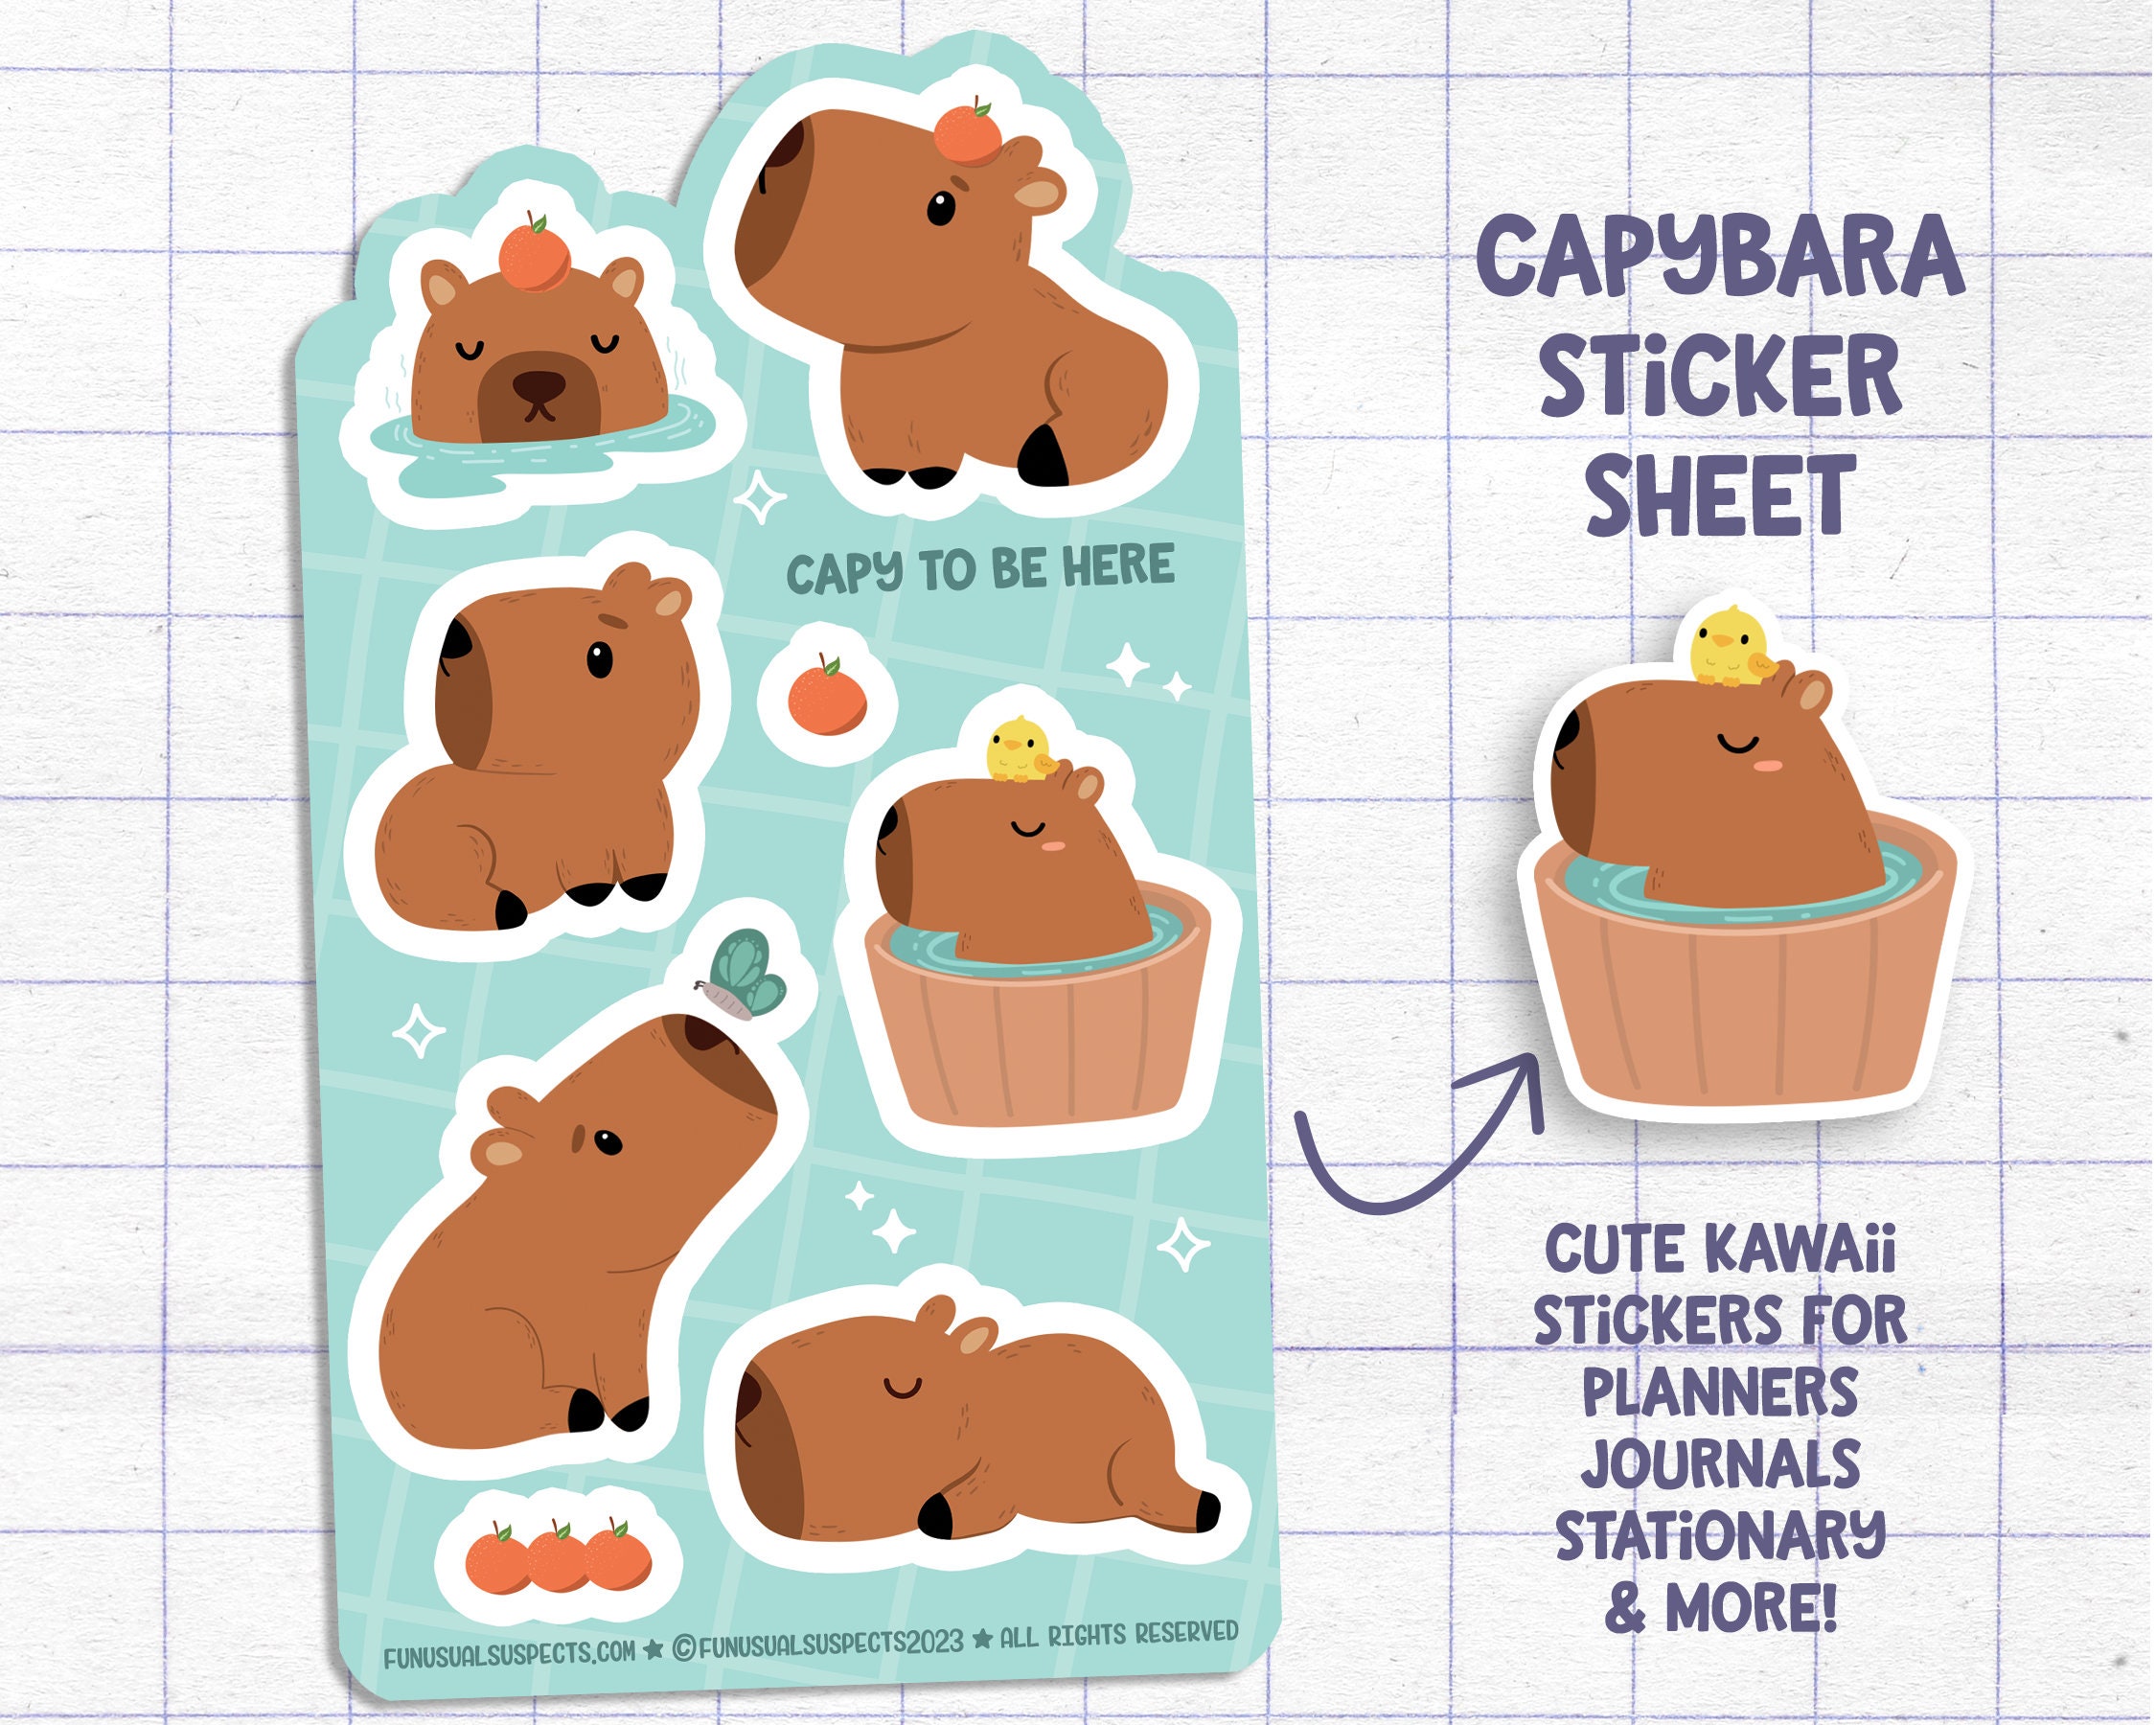 Capybara Sticker -  Österreich